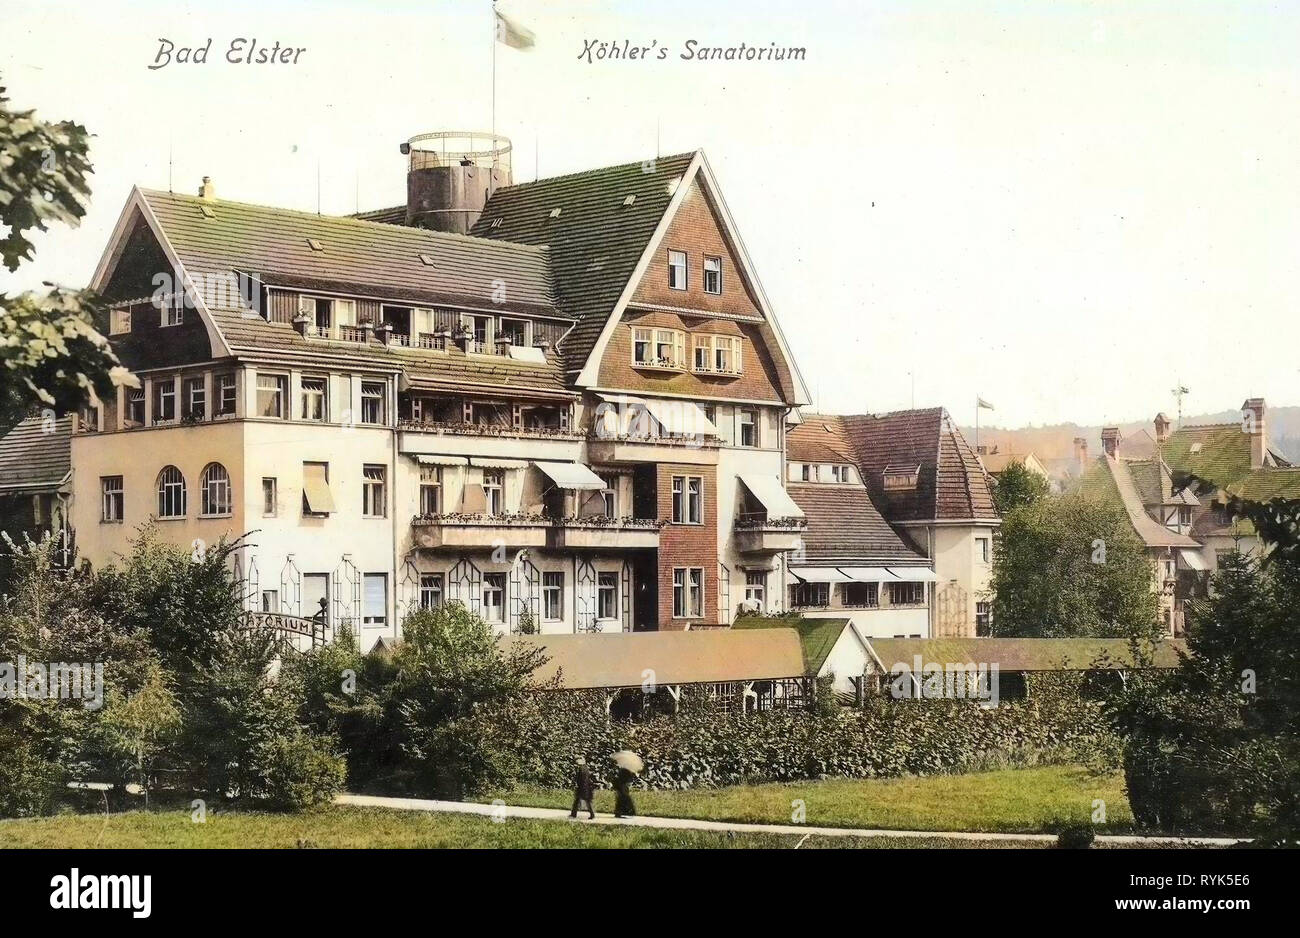 Bâtiments Spa en Saxe, bâtiments en Bad Elster, 1916, Vogtlandkreis, Bad Elster, Köhlers Sanatorium, Allemagne Banque D'Images